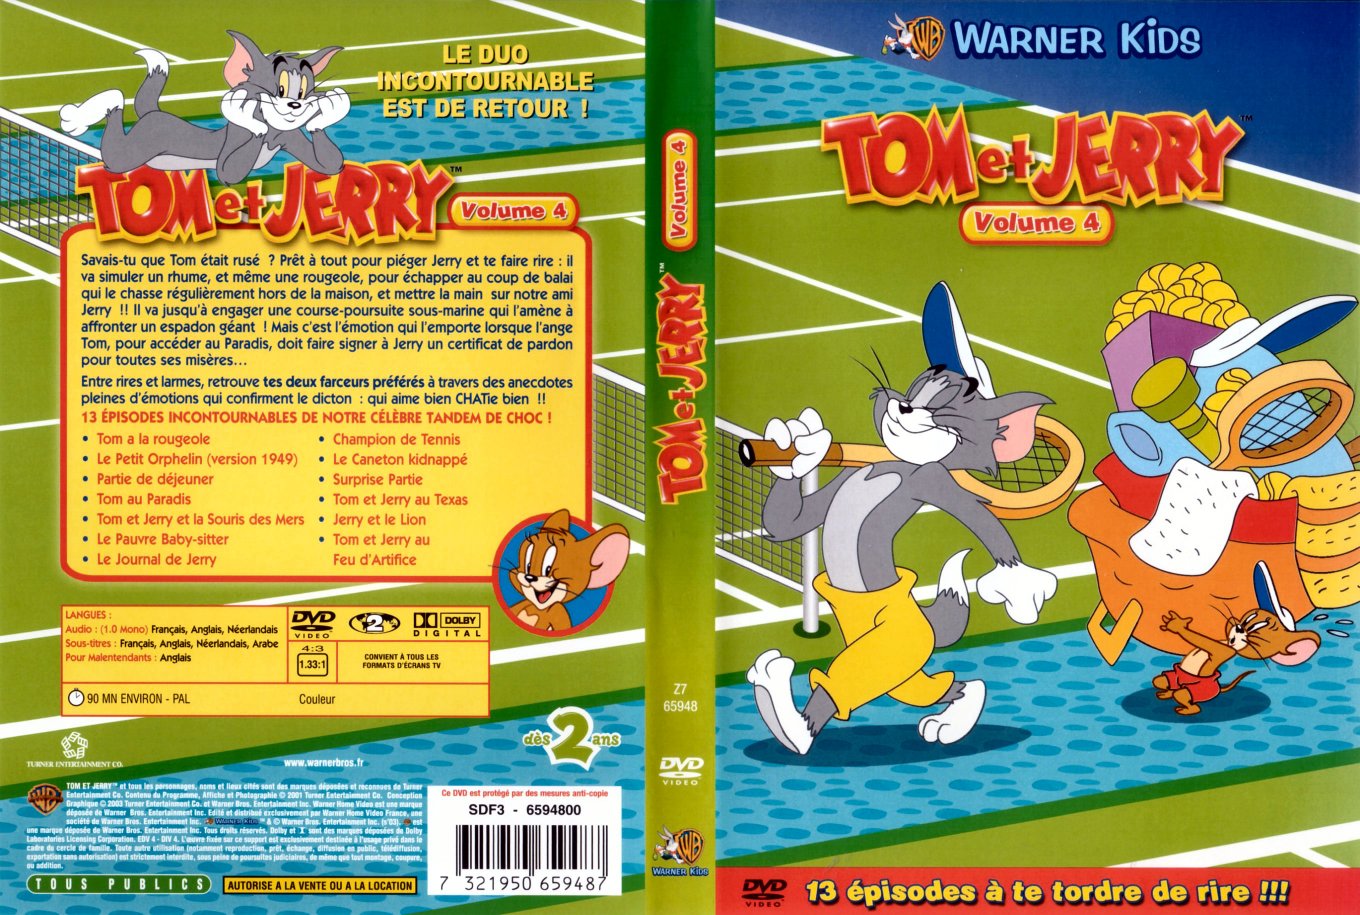 Jaquette DVD Tom et Jerry la collection vol 4 v2